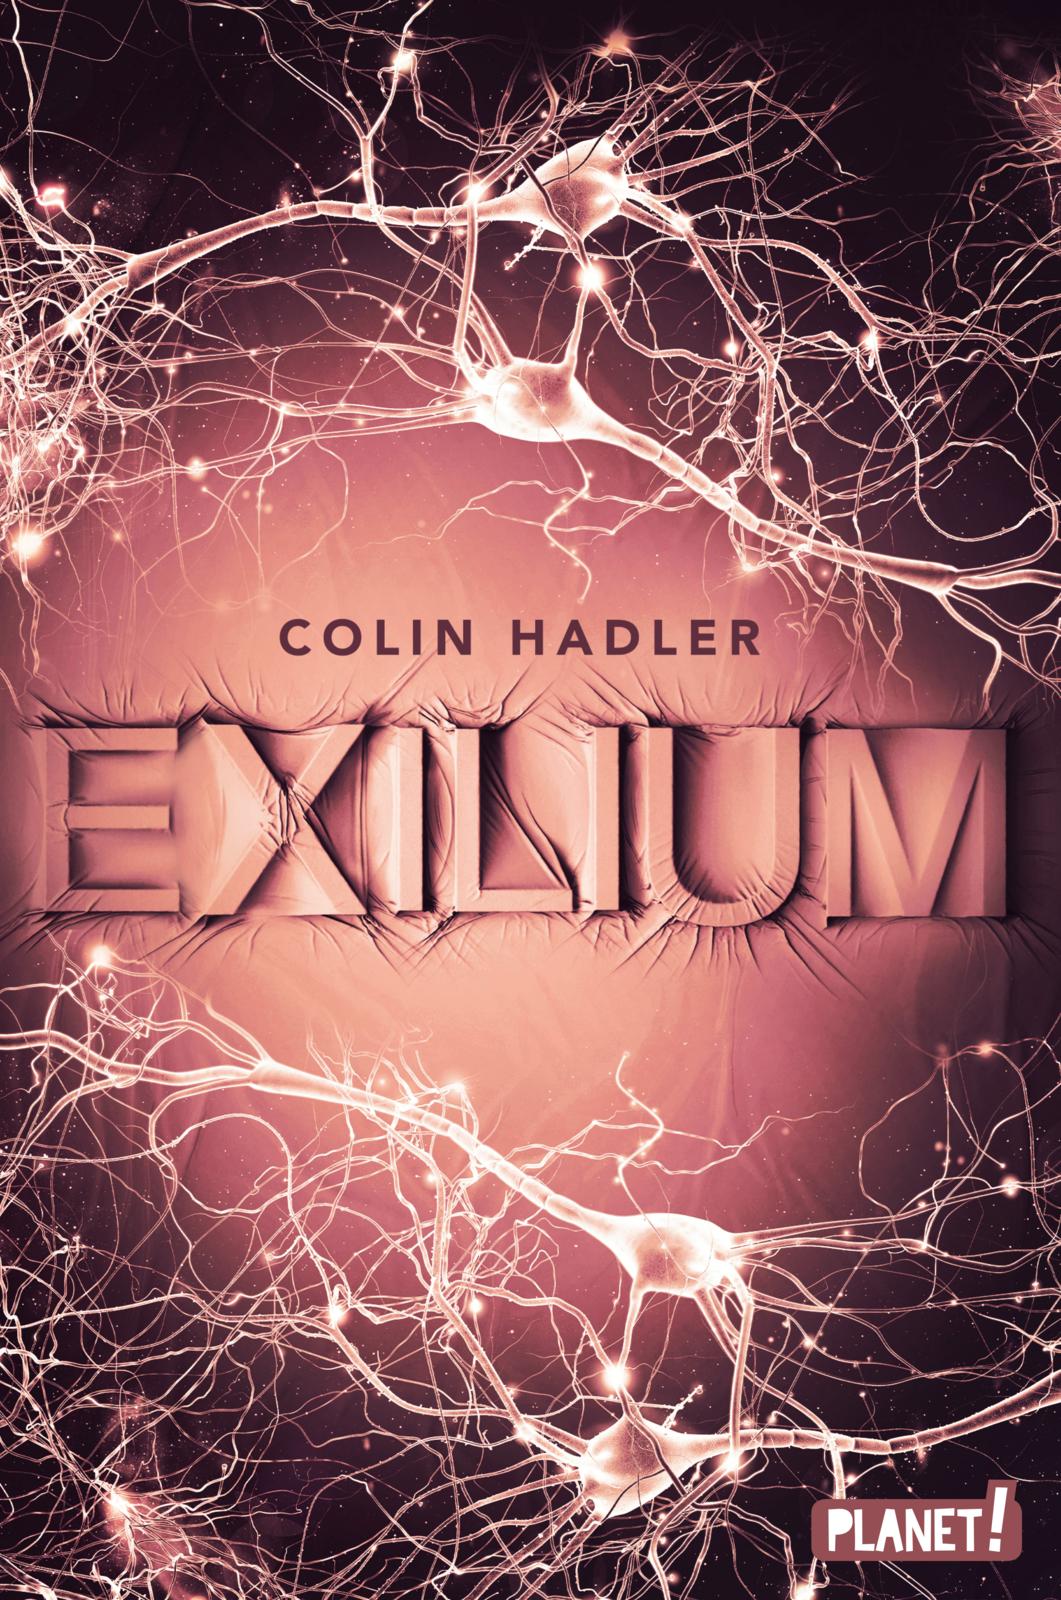 Bücherblog. Neuerscheinungen. Buchcover. Exilium von Colin Hadler. Thriller.  Jugendbuch. Planet!.